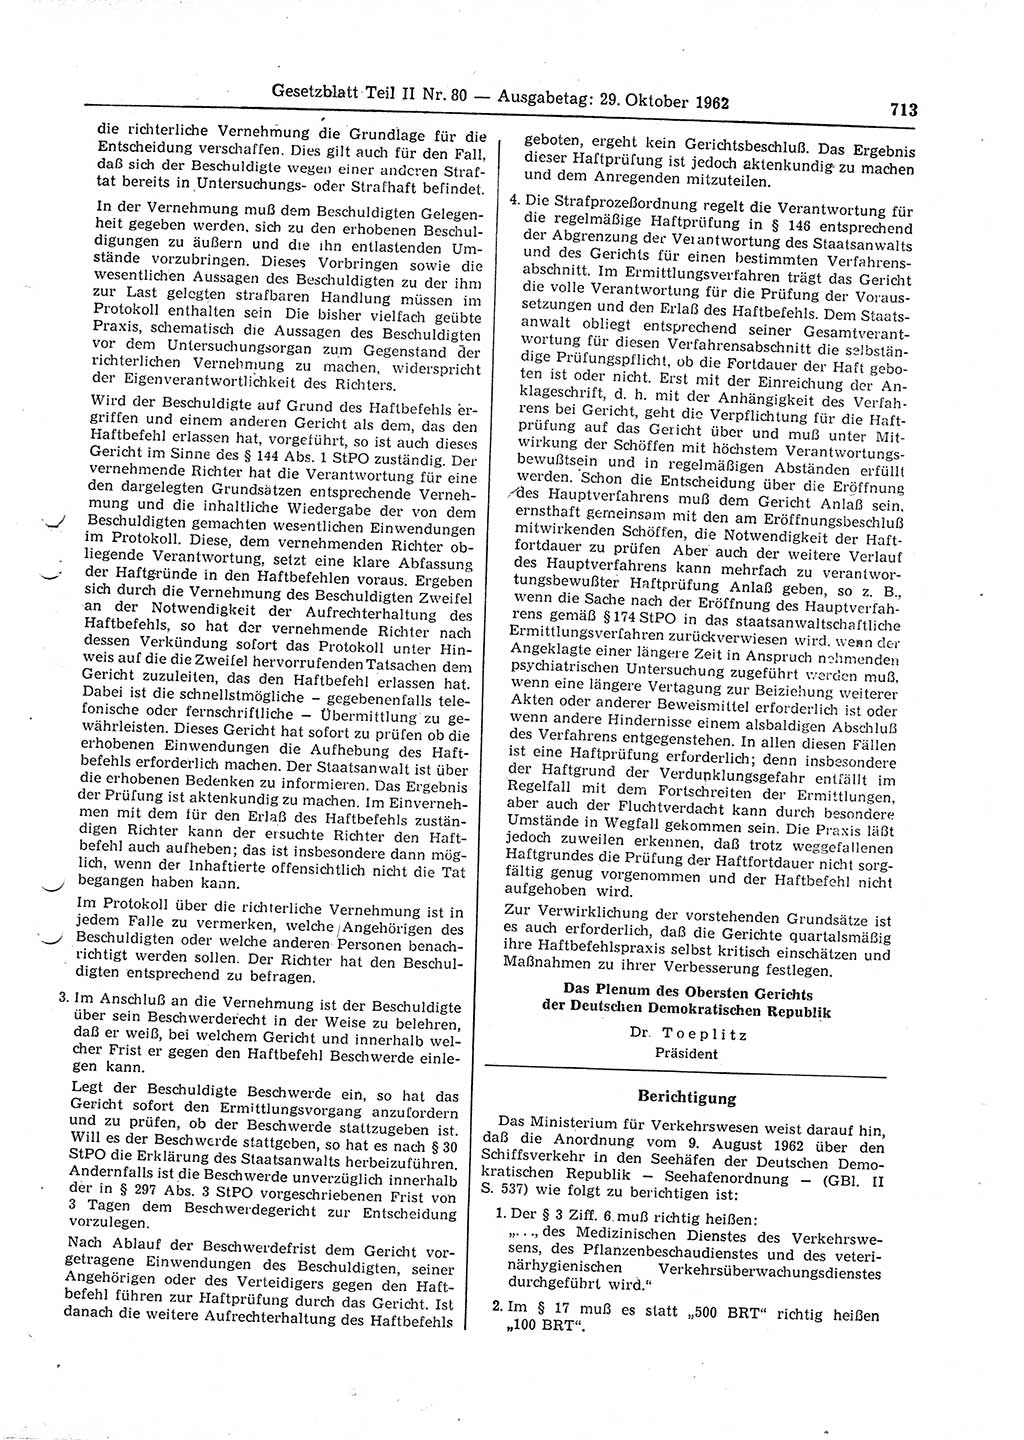 Gesetzblatt (GBl.) der Deutschen Demokratischen Republik (DDR) Teil ⅠⅠ 1962, Seite 713 (GBl. DDR ⅠⅠ 1962, S. 713)